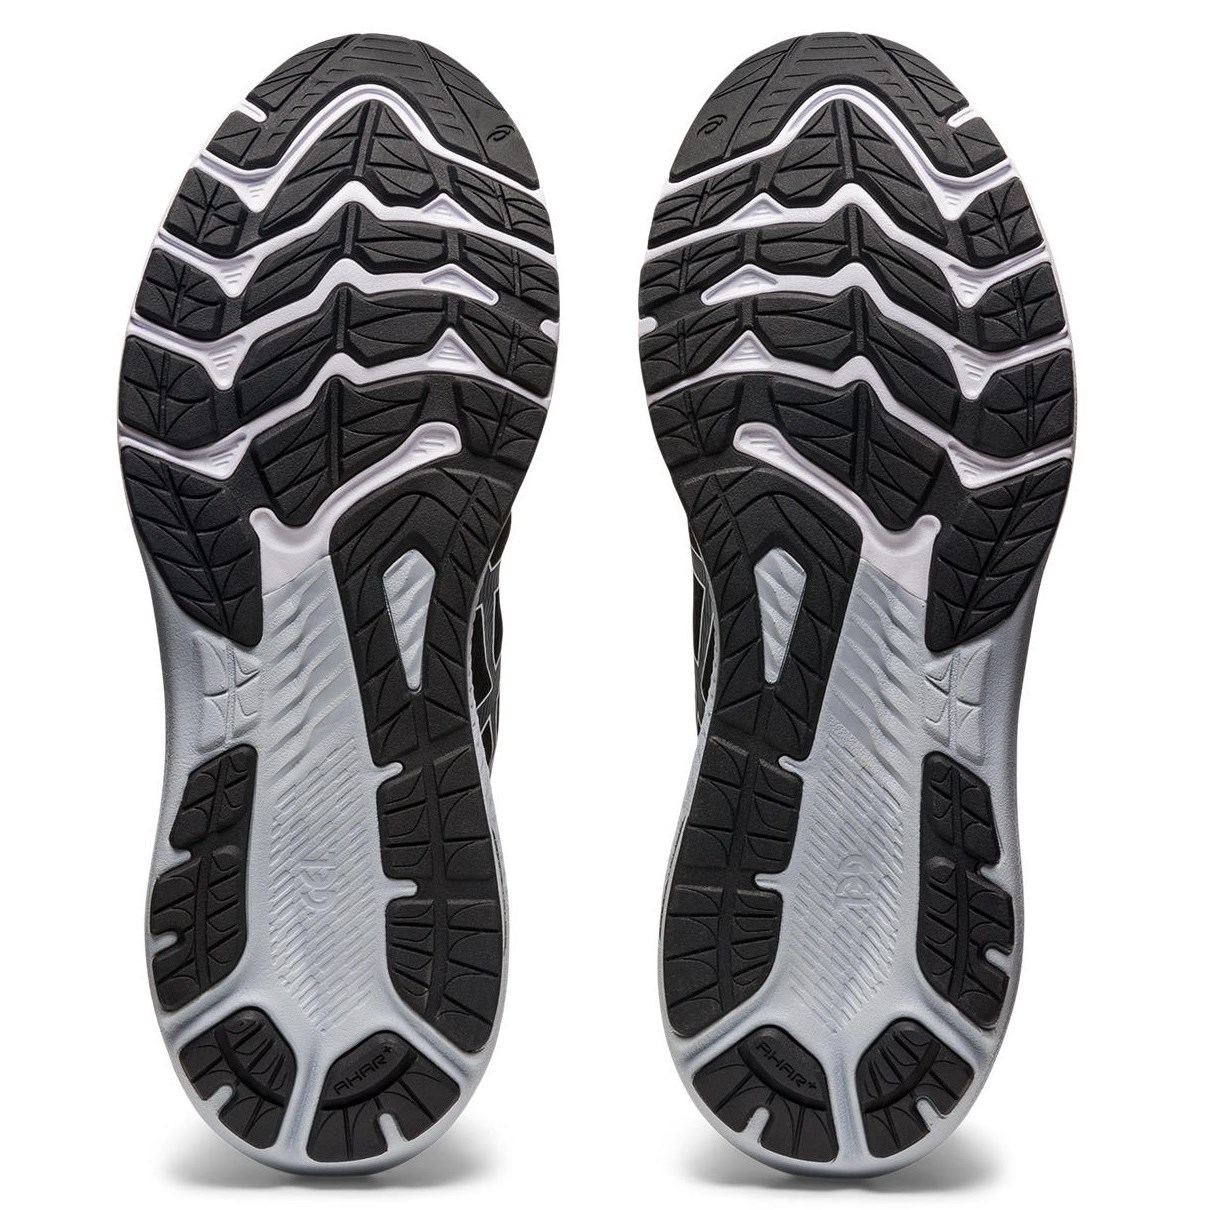 Asics GT-2000 11 - Mens Running Shoes - Black/White | Sportitude